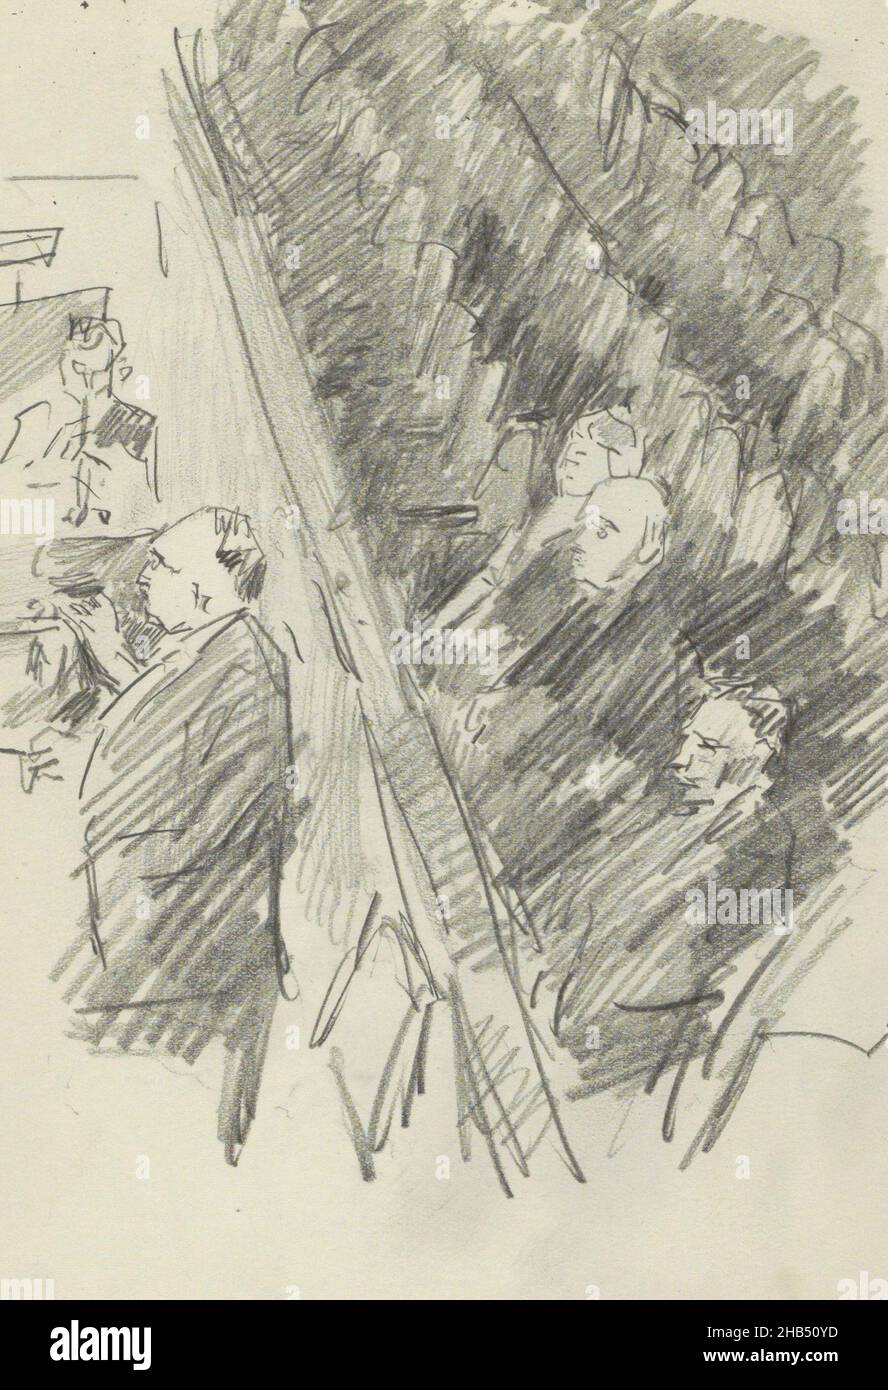 À côté de lui un blazer et des auditeurs derrière lui.Feuille 9 recto de l'esquisse LXI avec 20 feuilles, chef d'orchestre dans une fosse d'orchestre, Isaac Israël, 1875 - 1934 Banque D'Images